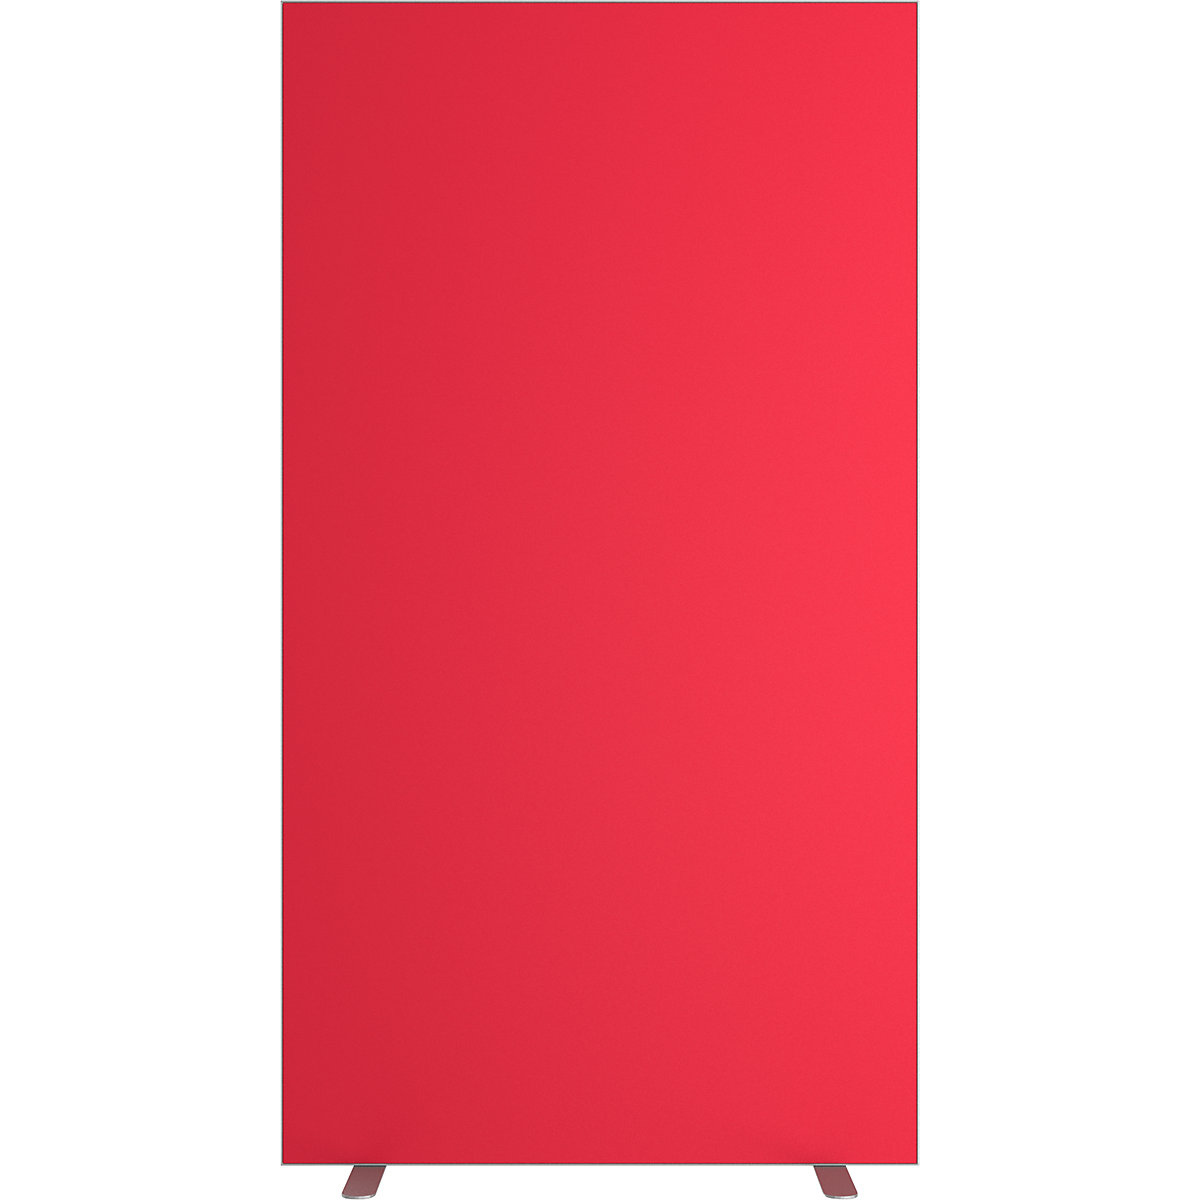 Parete divisoria easyScreen, tinta unita, con protezione acustica, rosso, larghezza 940 mm-16